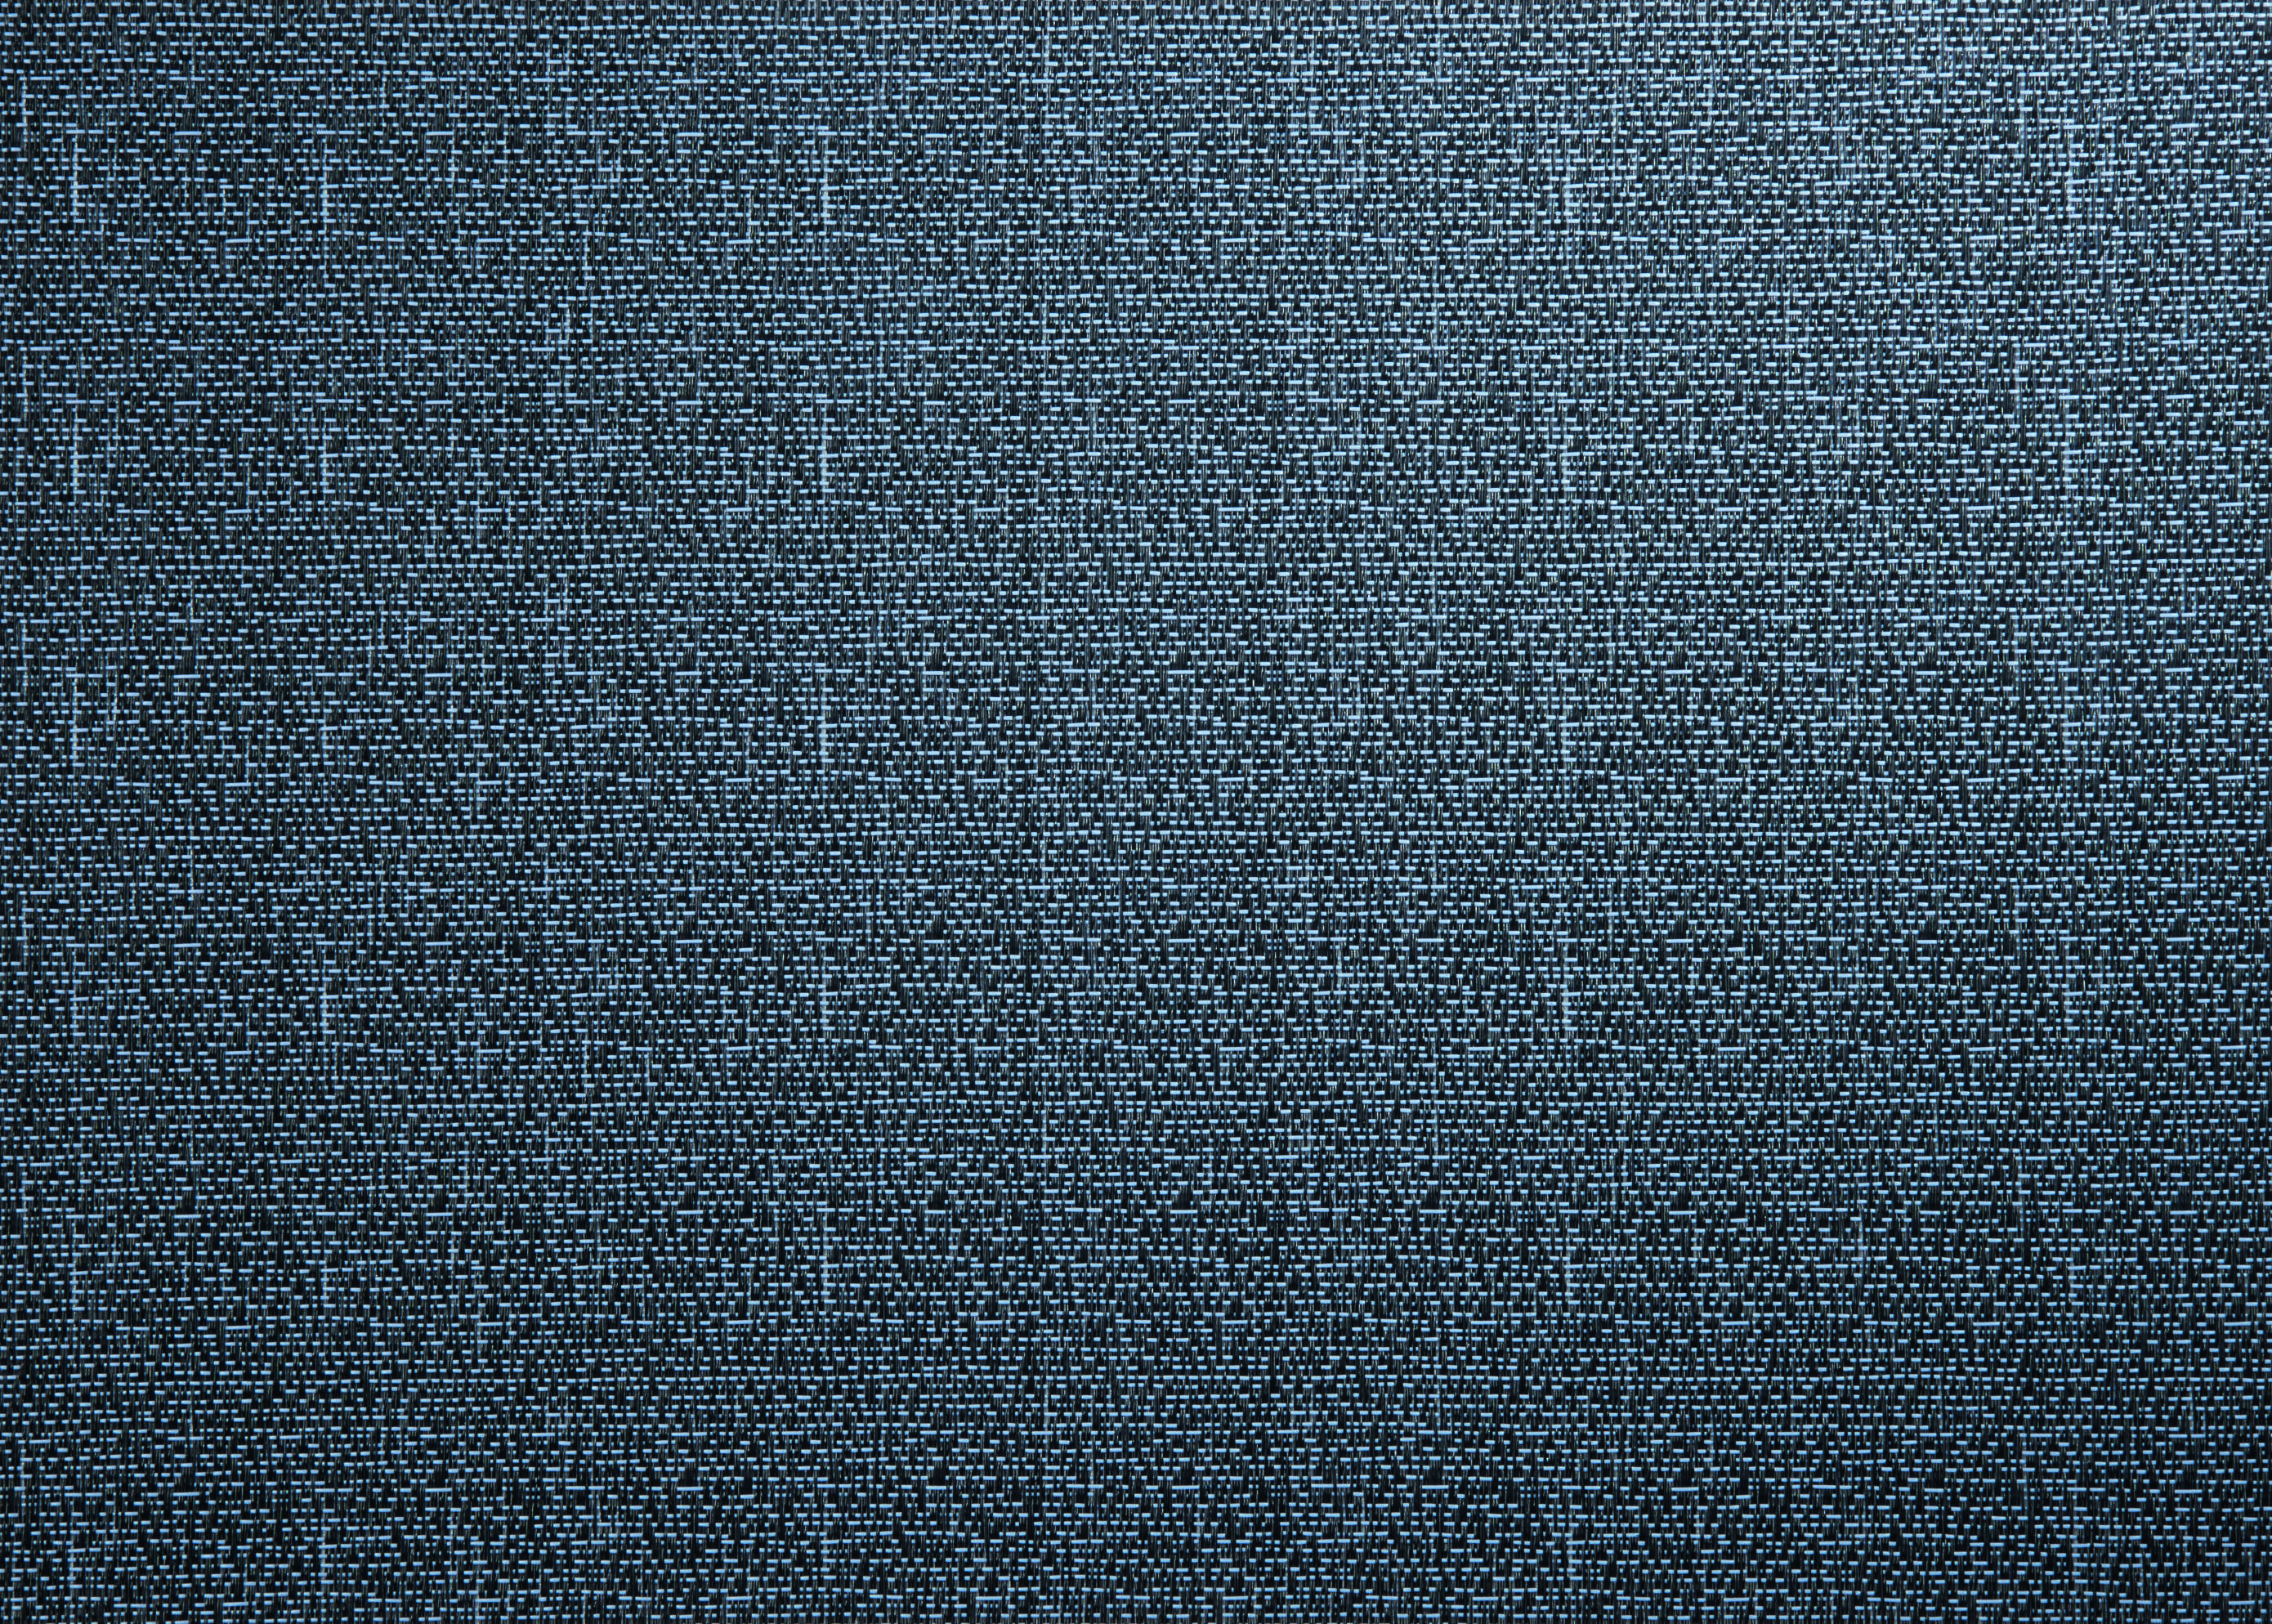 Tischset woven blue PVC Breite: 33cm Länge: 46cm 